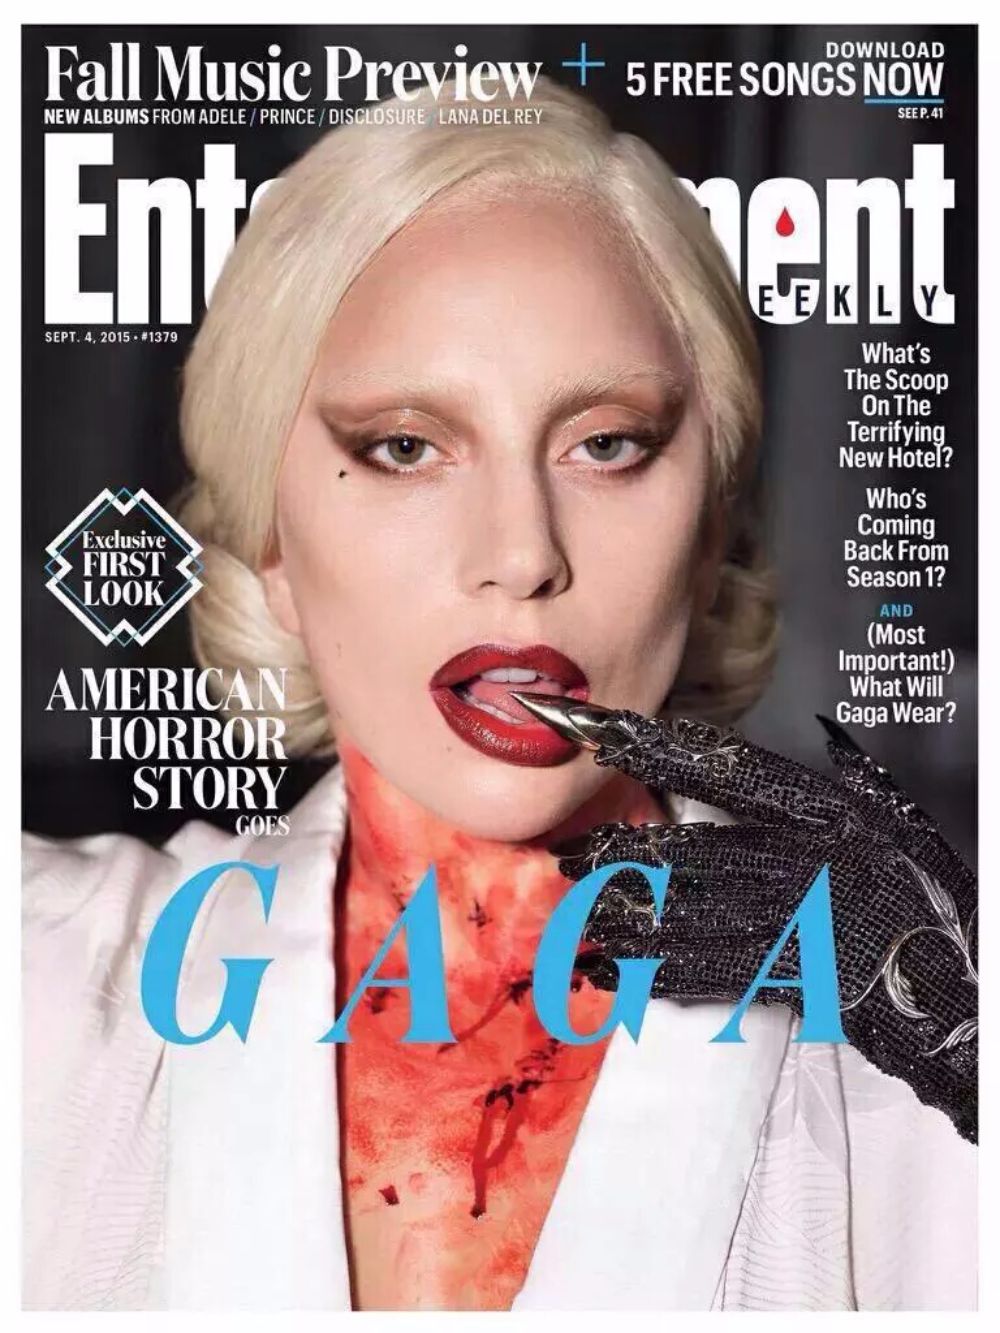 Lady Gaga She's back!